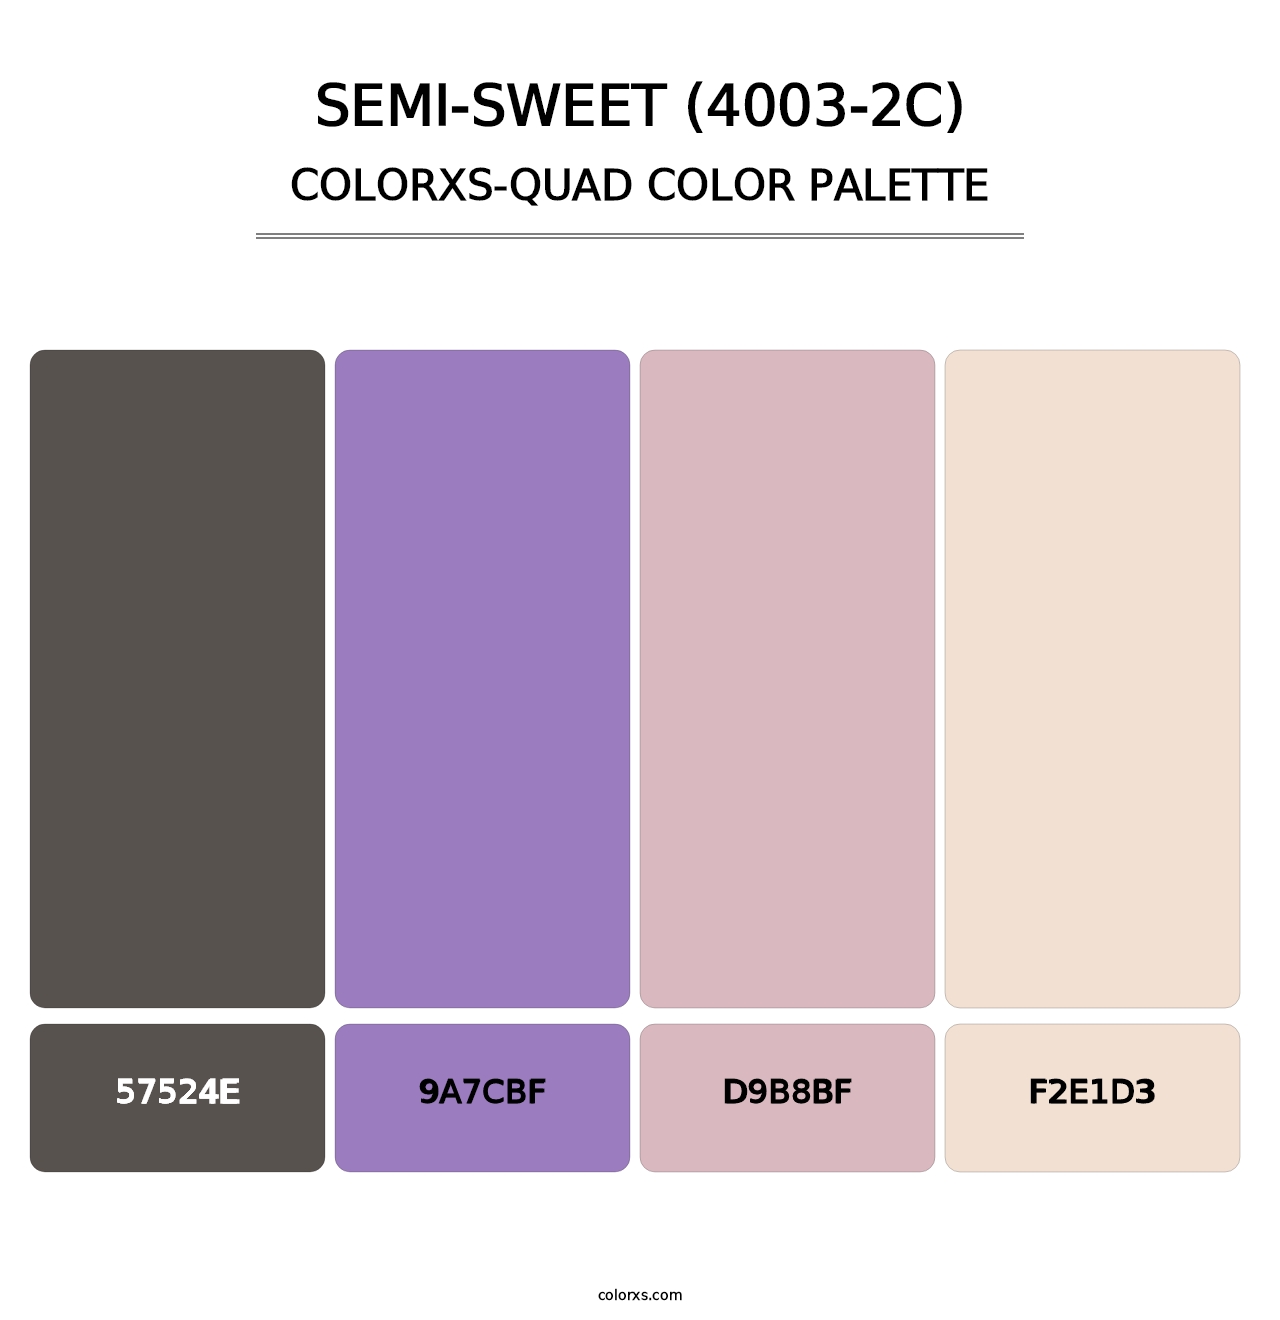 Semi-Sweet (4003-2C) - Colorxs Quad Palette